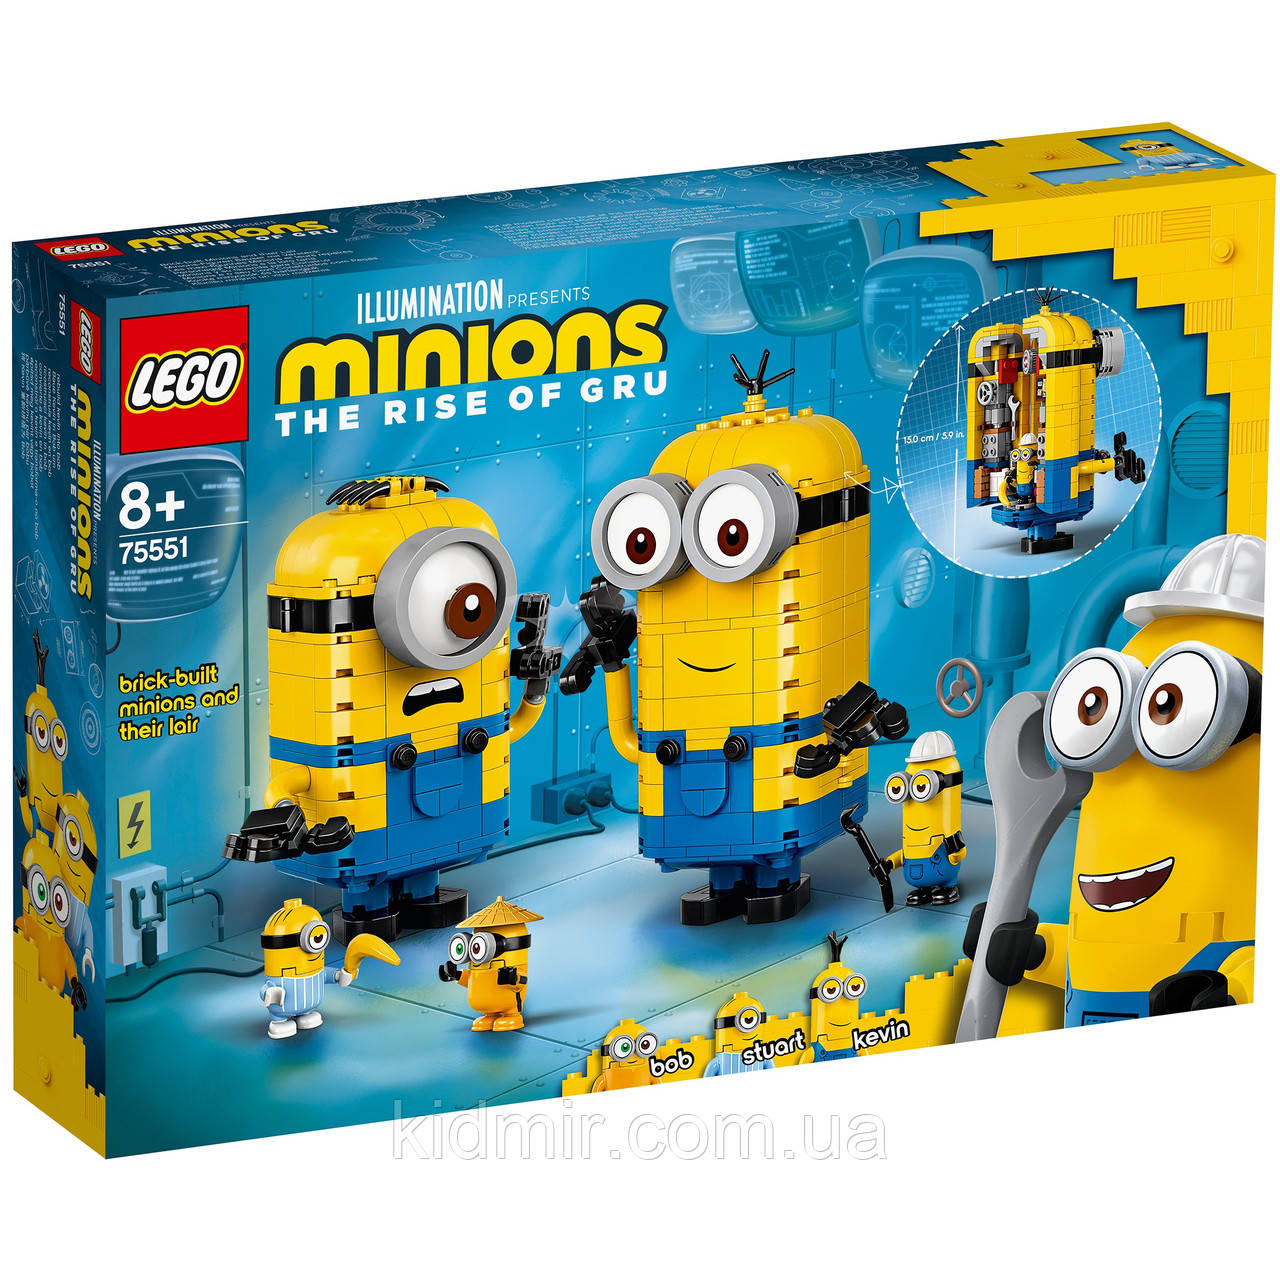 Конструктор LEGO Minions 75551 Фігурки міньйонів і їх будинок